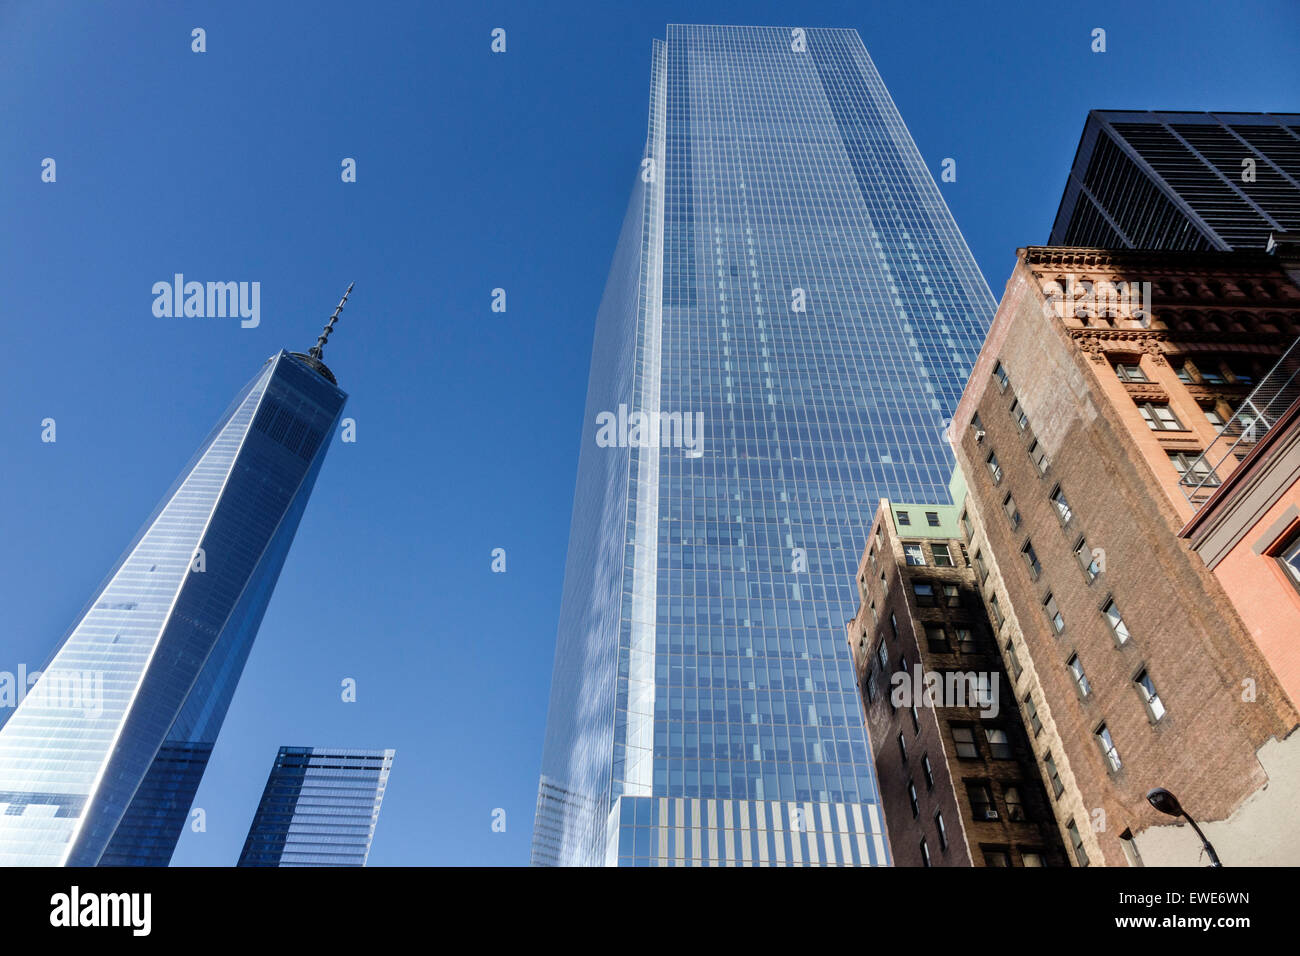 Ciudad de Nueva York, NY NYC, Manhattan, Lower, Distrito Financiero, One World Trade Center, centro, cuatro, rascacielos de gran altura rascacielos edificios rascacielos rascacielos rascacielos rascacielos rascacielos Foto de stock